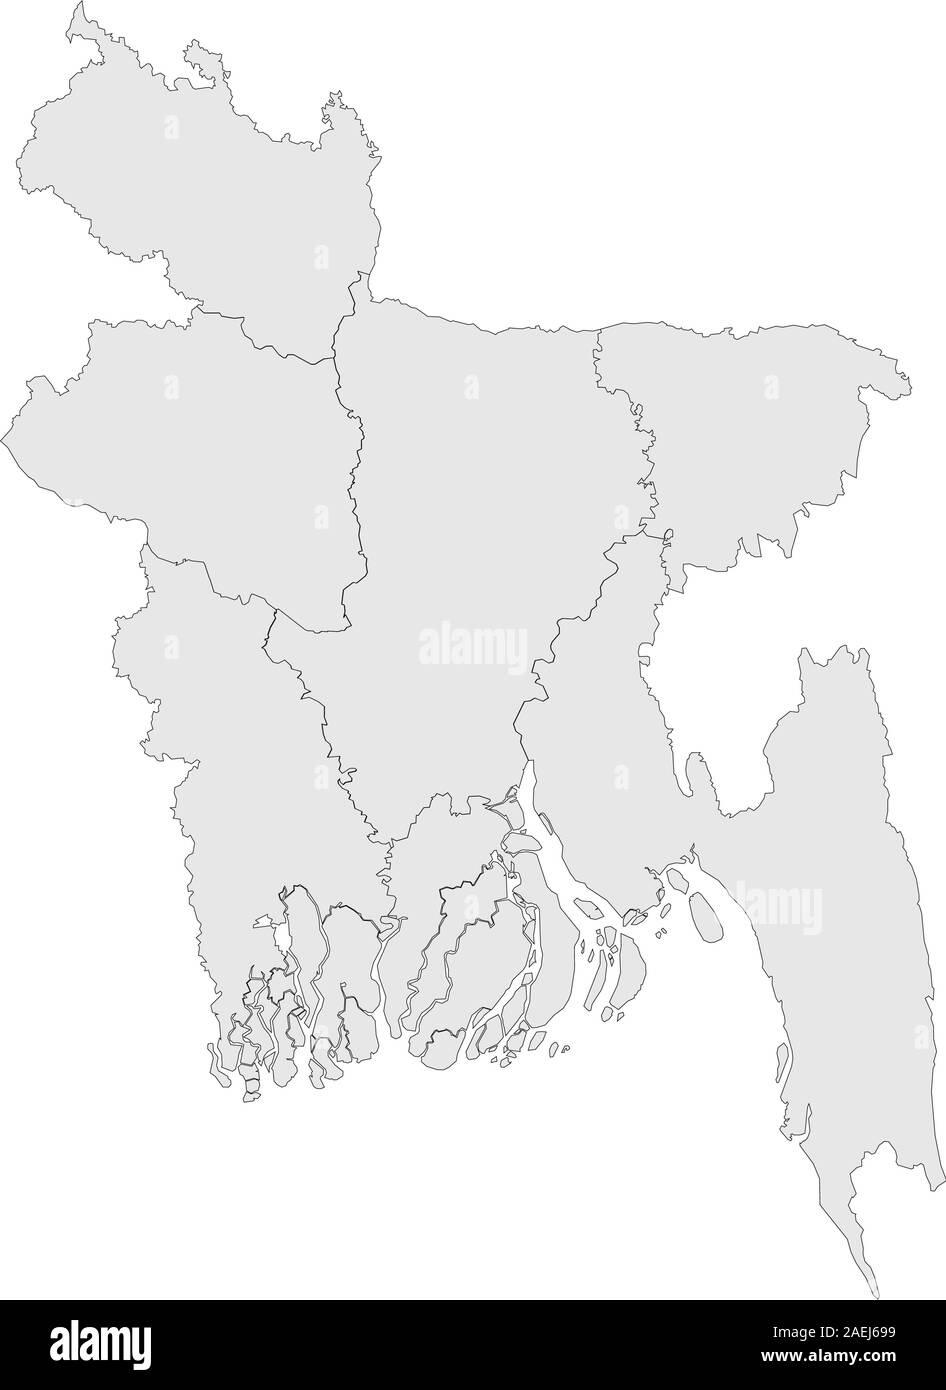 Bangladesh mappa vuota con confini illustrazione vettoriale. Colore grigio chiaro. Illustrazione Vettoriale